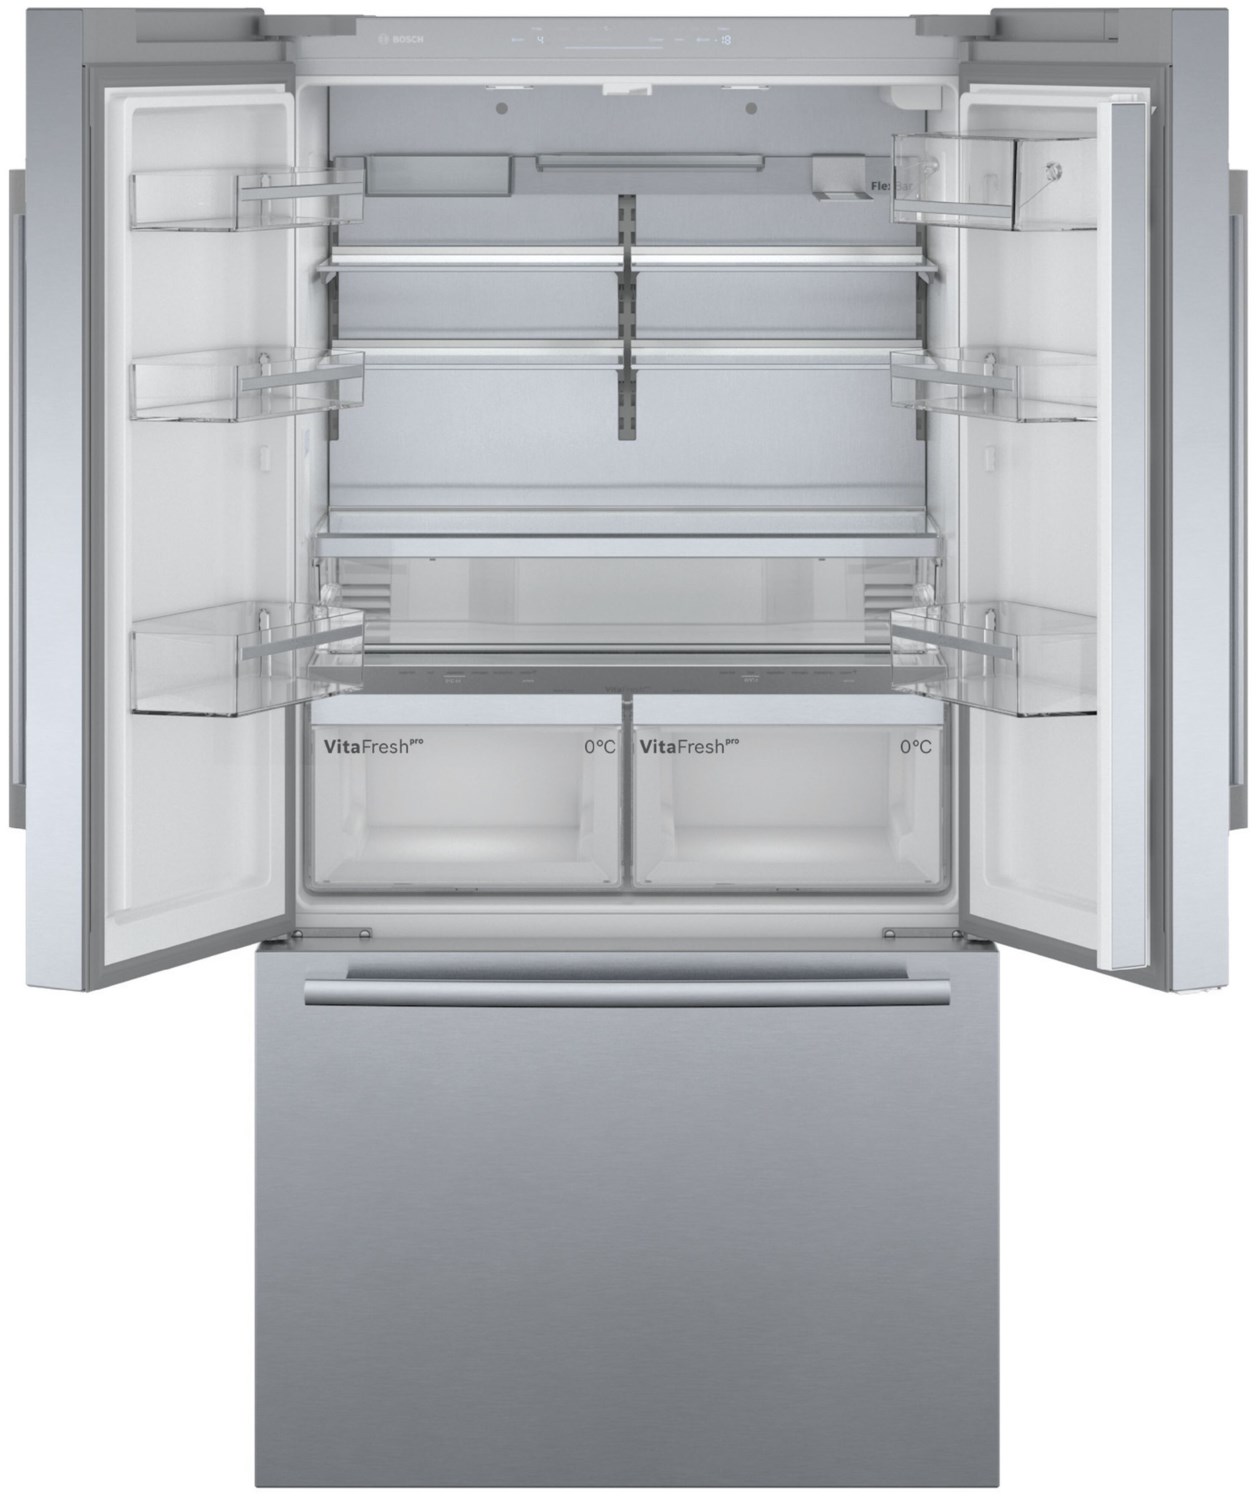 Bosch Serie 8 French Door Kühl-/Gefrierautomat Edelstahl NoFrost mit Eis- und Wasserspender